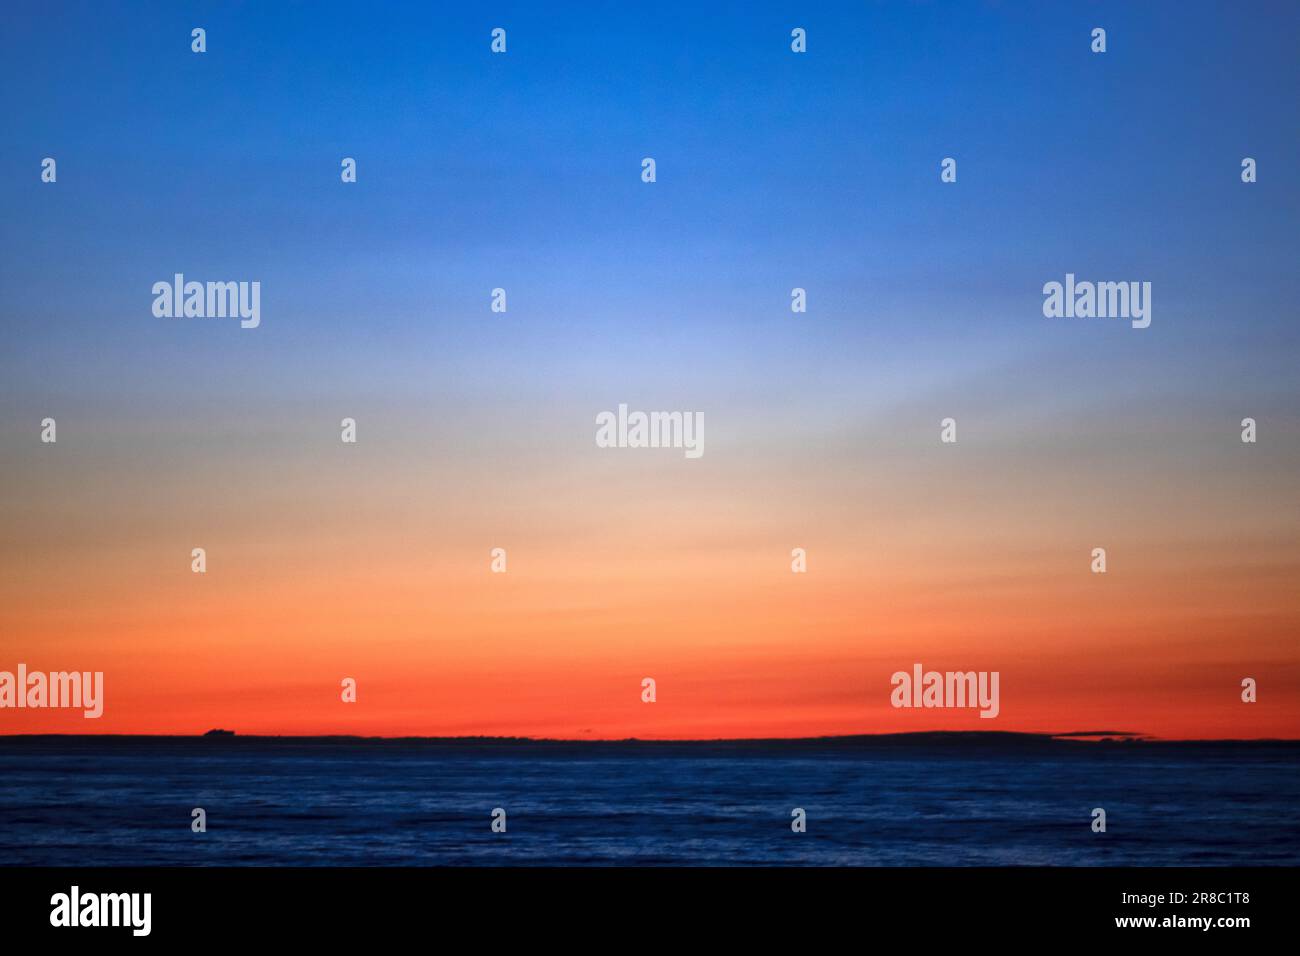 Foto eines Sonnenuntergangs mit einem Aquarell-Effekt und markanten Orange- und Blautönen am Horizont. Stockfoto